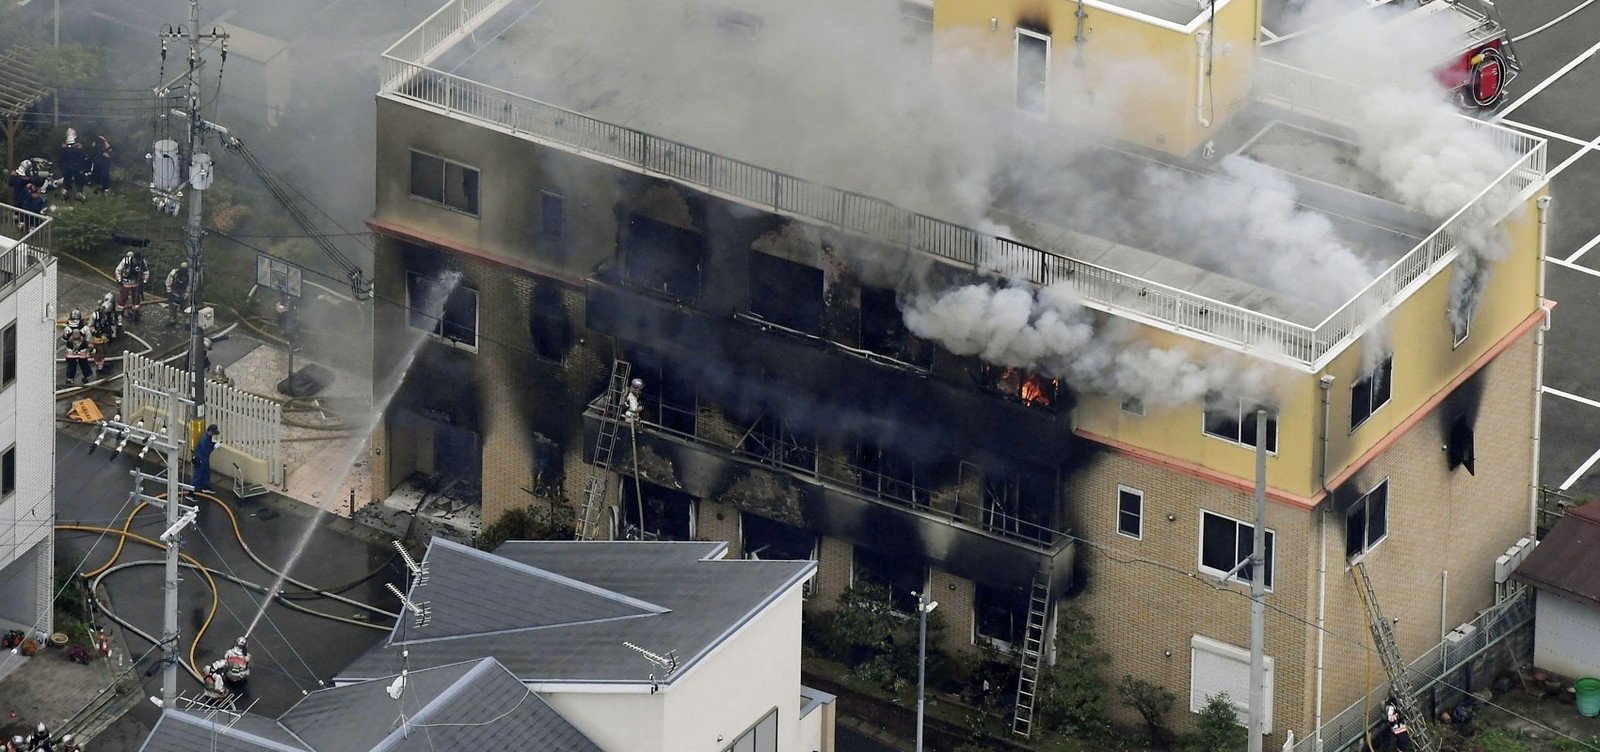 Incêndio criminoso deixa ao menos 13 mortos em estúdio no Japão